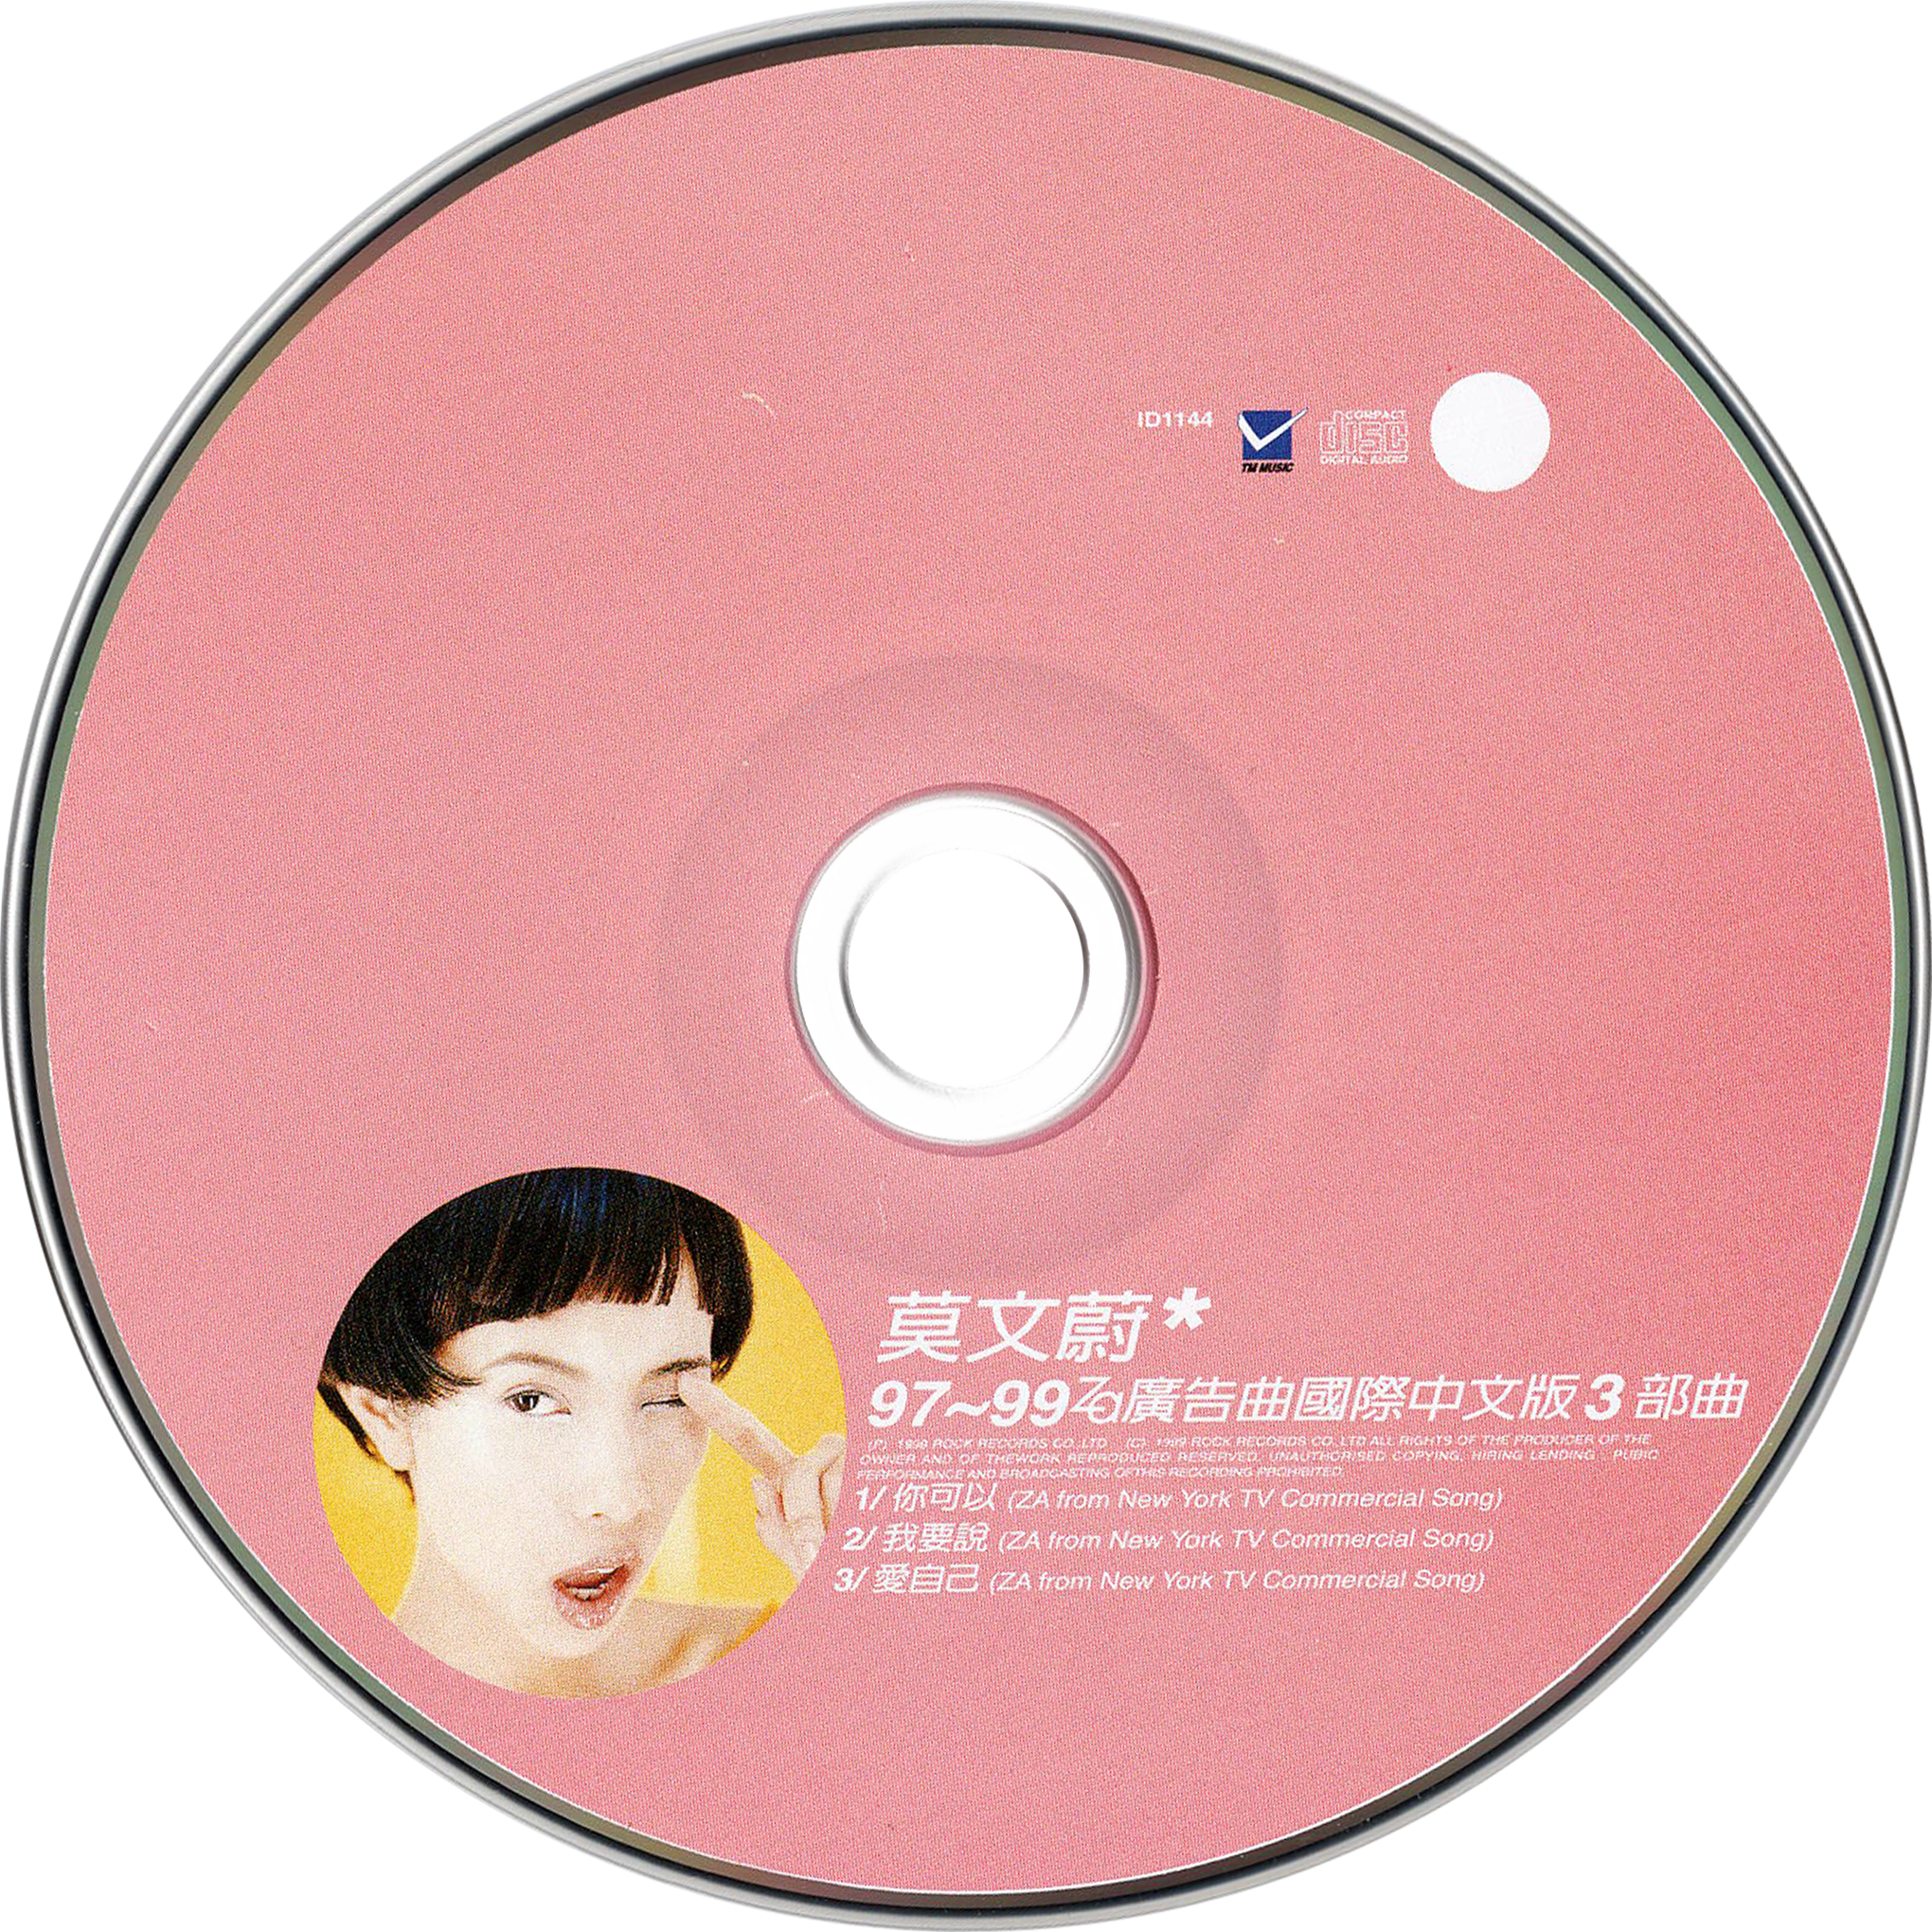 Karen MOK 莫文蔚 - 97-99 Za廣告曲國際中文版3部曲 [USED]